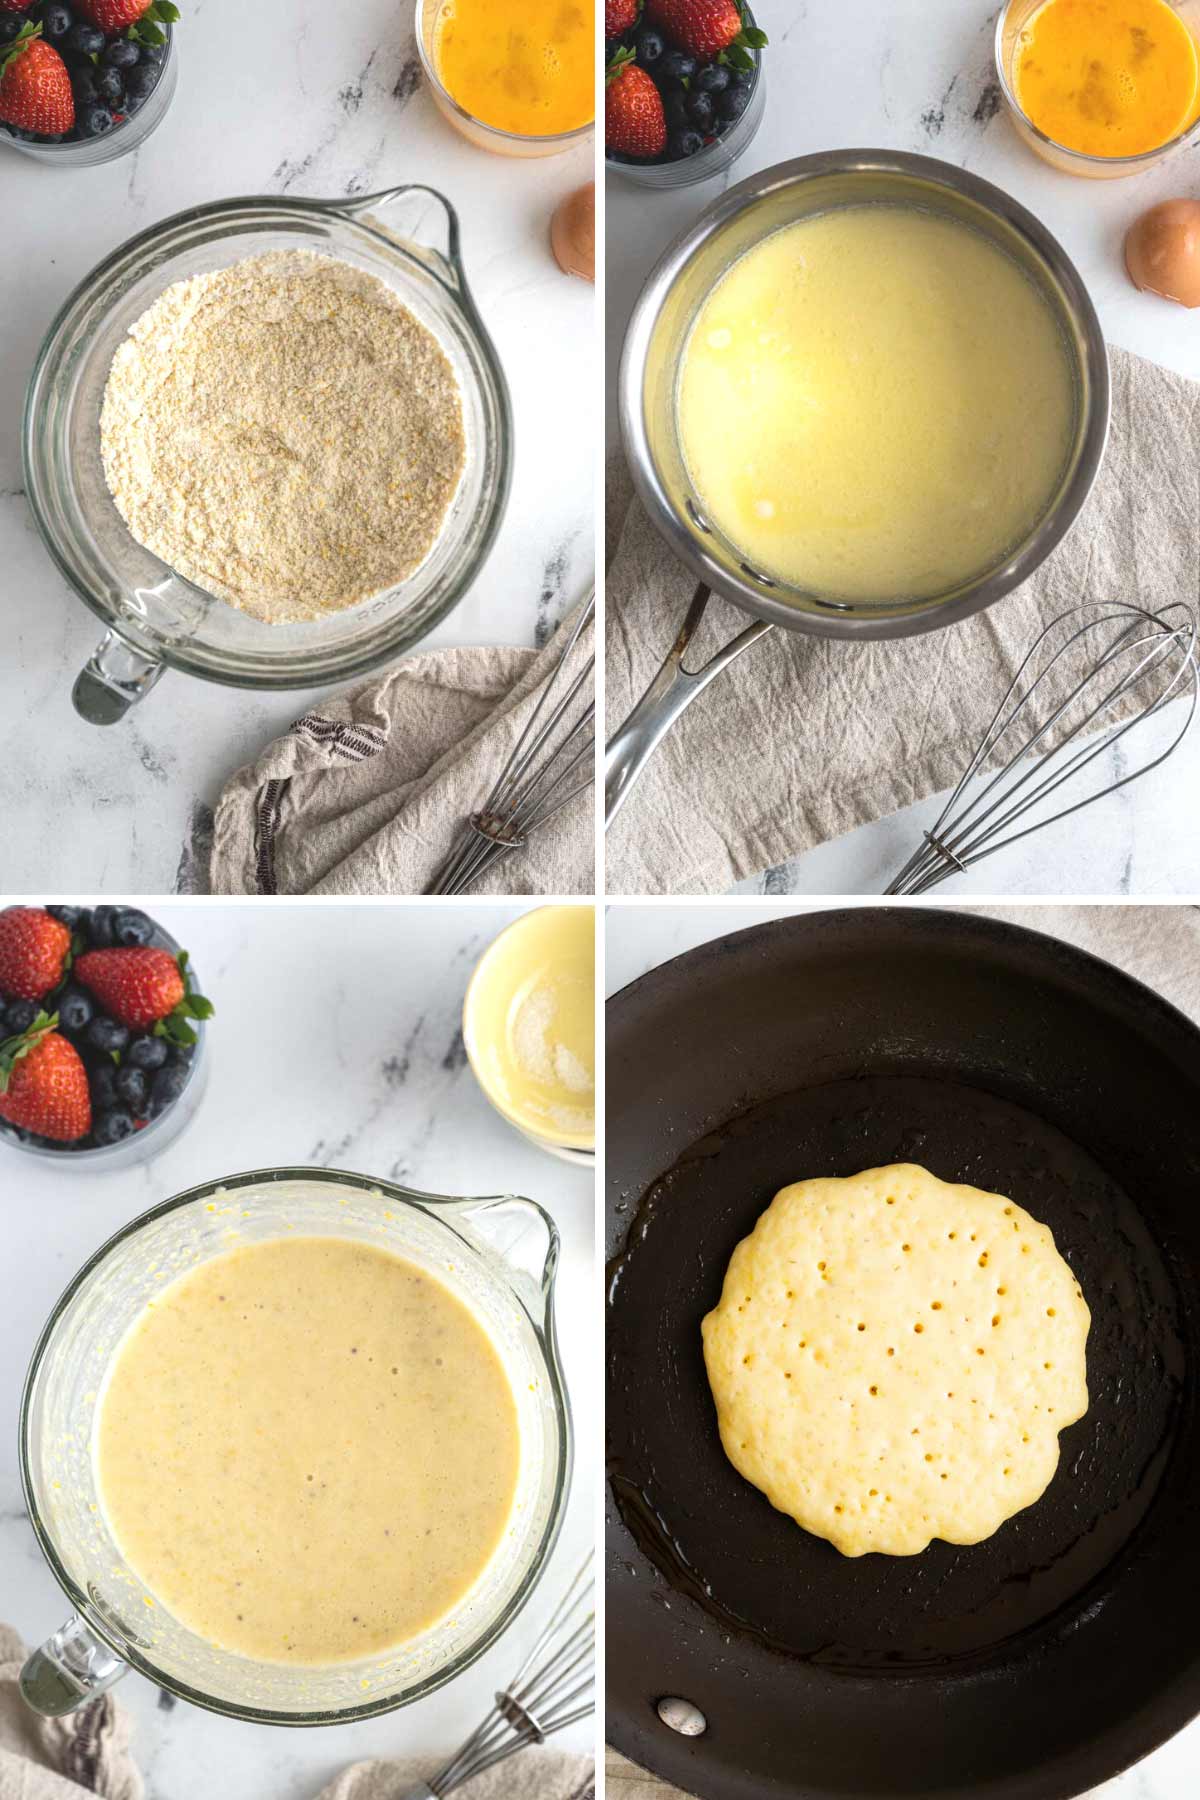 Pancake batter and making pancakes in a non stick pan.